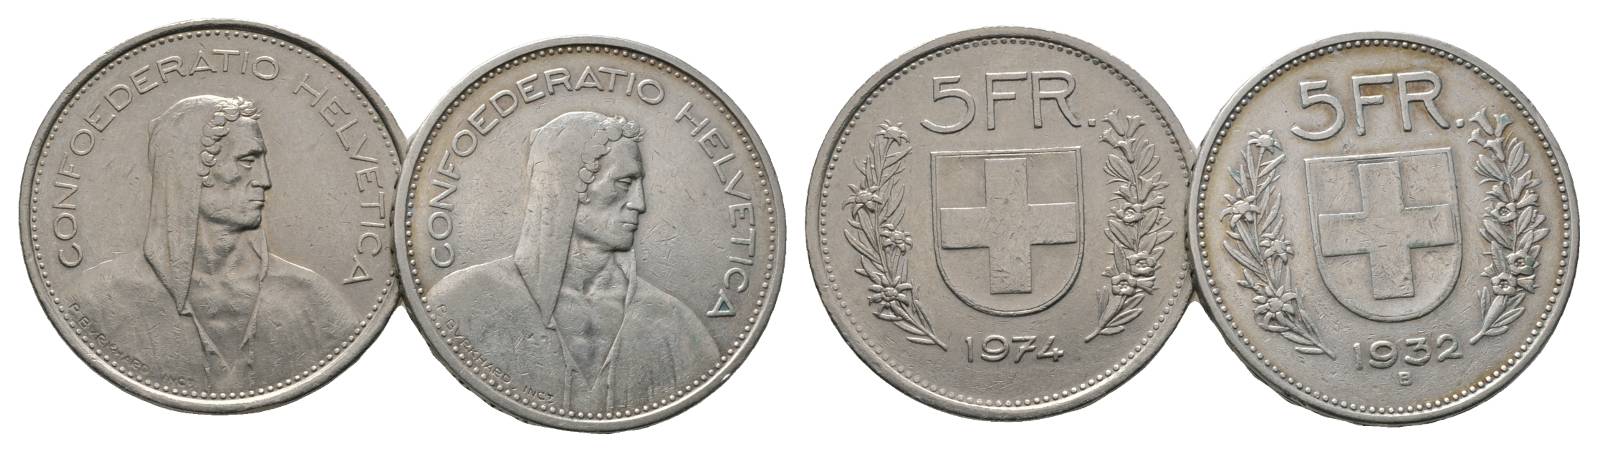  Schweiz, 5 Franken 1974/ 1932   